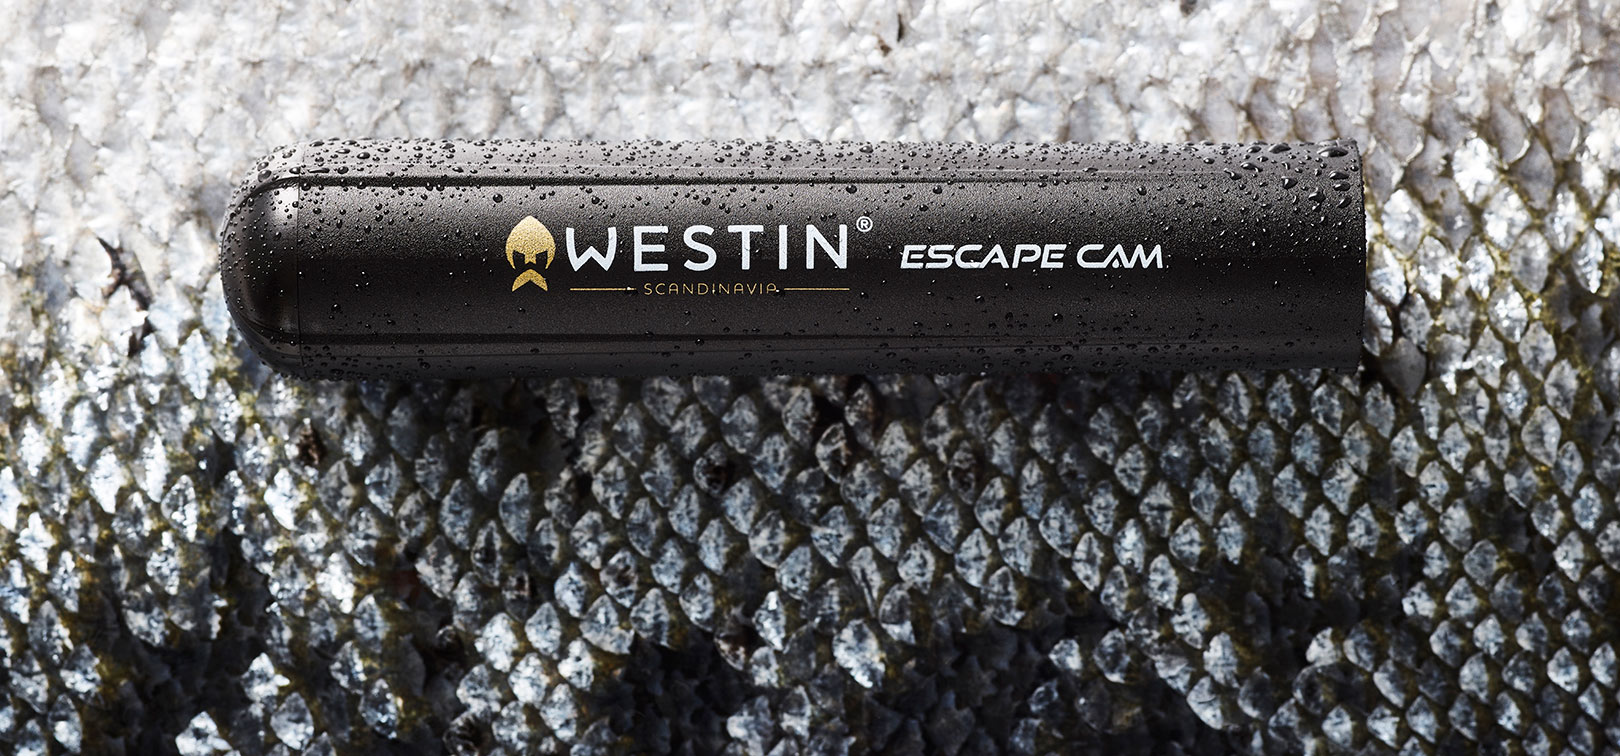 Westin Escape Cam